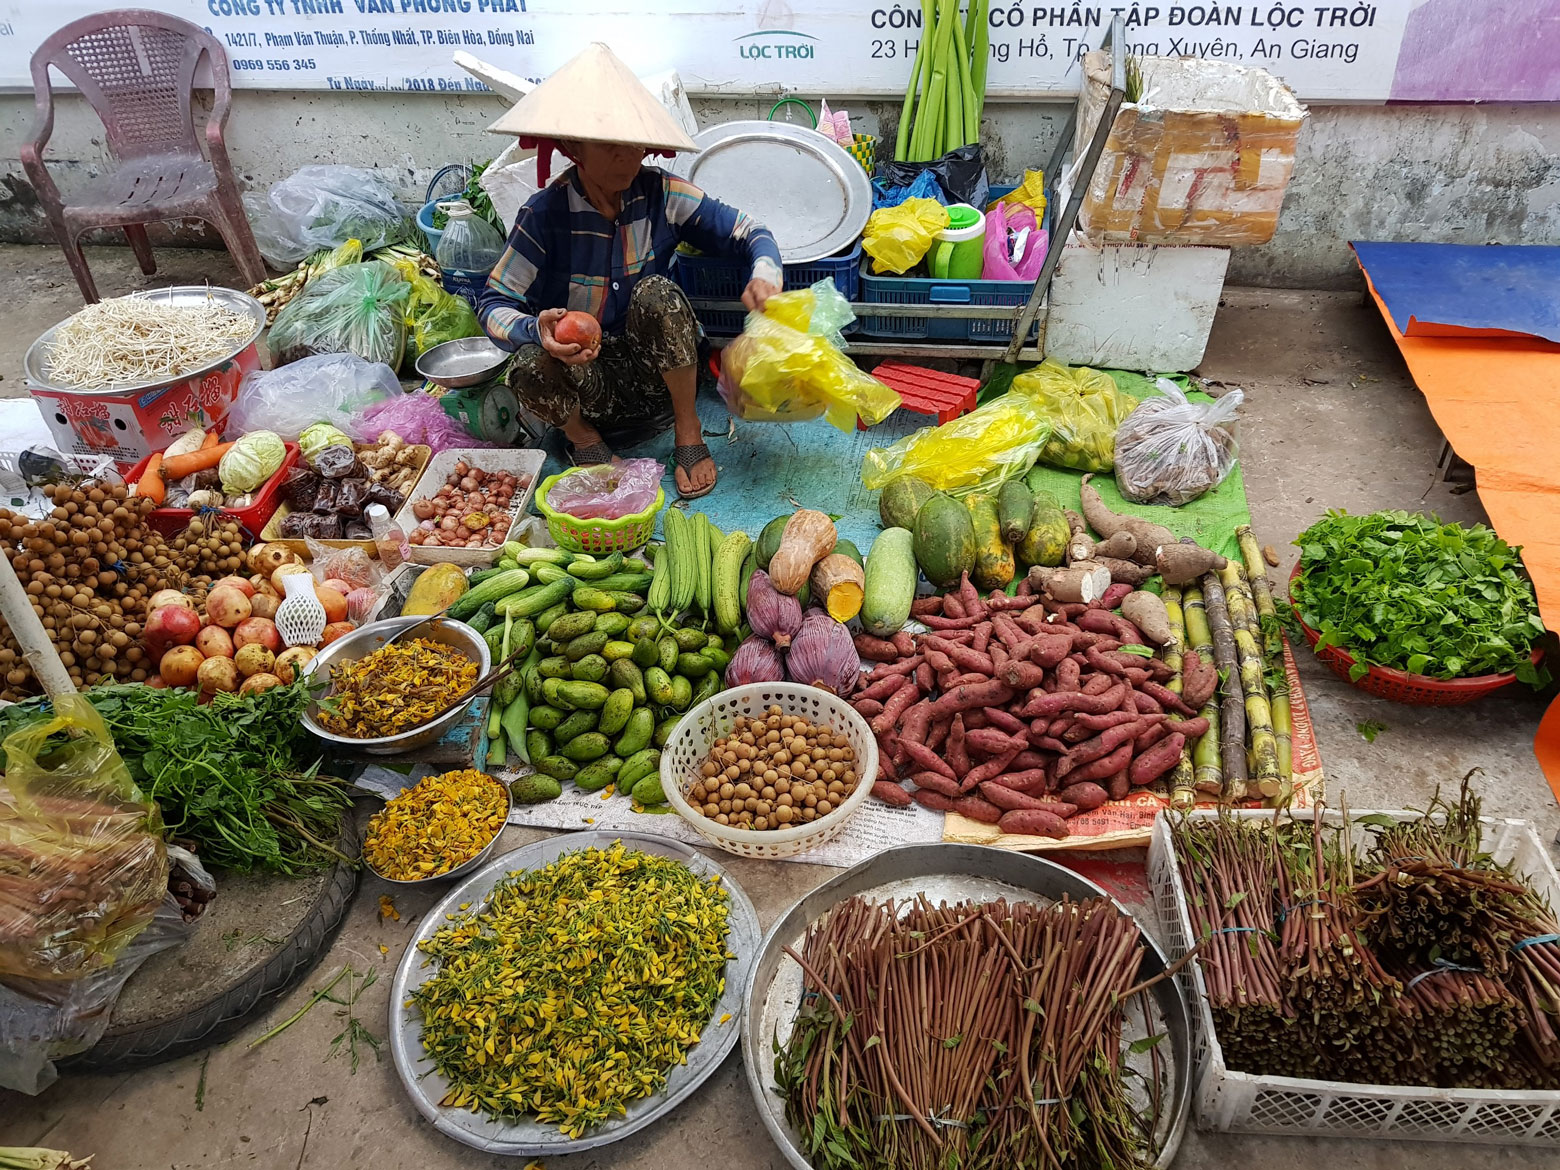 Những sản vật được đưa đi khắp nơi tiêu thụ từ chợ truyền thống đến cả các nhà hàng ở khu vực đô thị